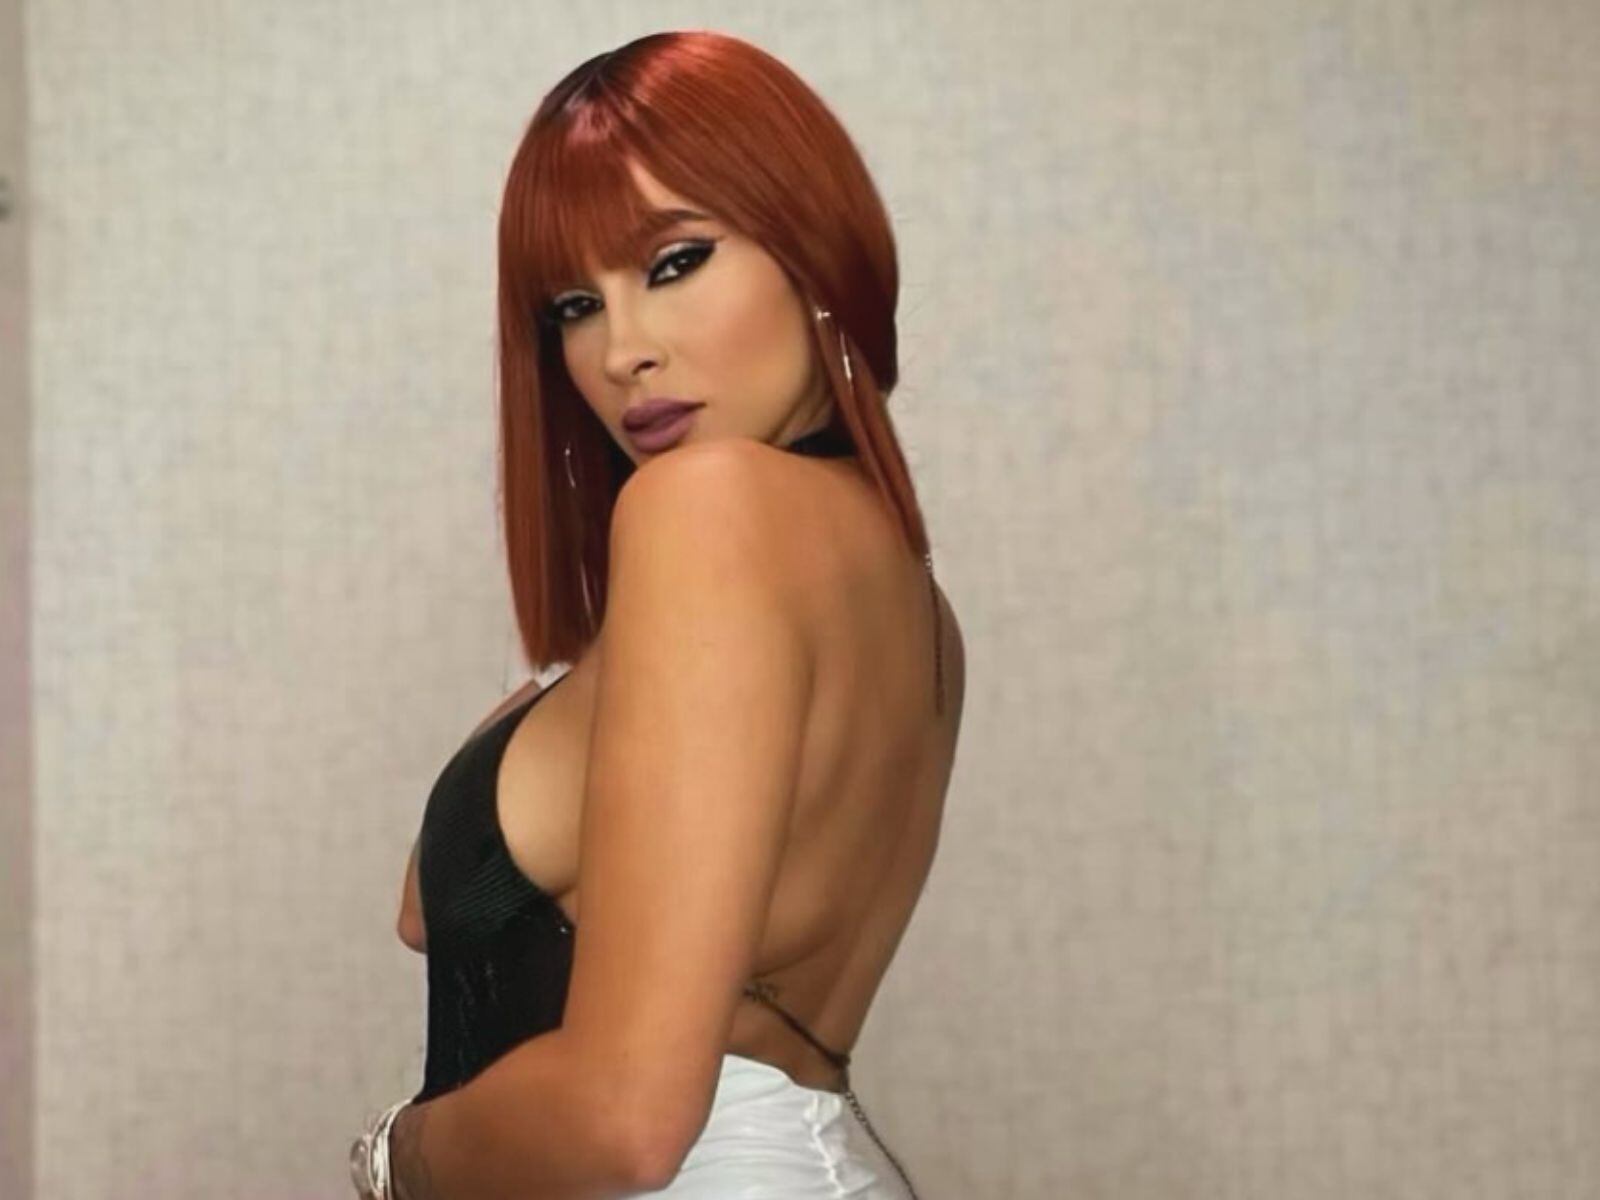 La modelo puertorriqueña ha cambiado de look en varias ocasiones. Aquí con el cabello de color rojo (Patricia Corcino / Instagram)